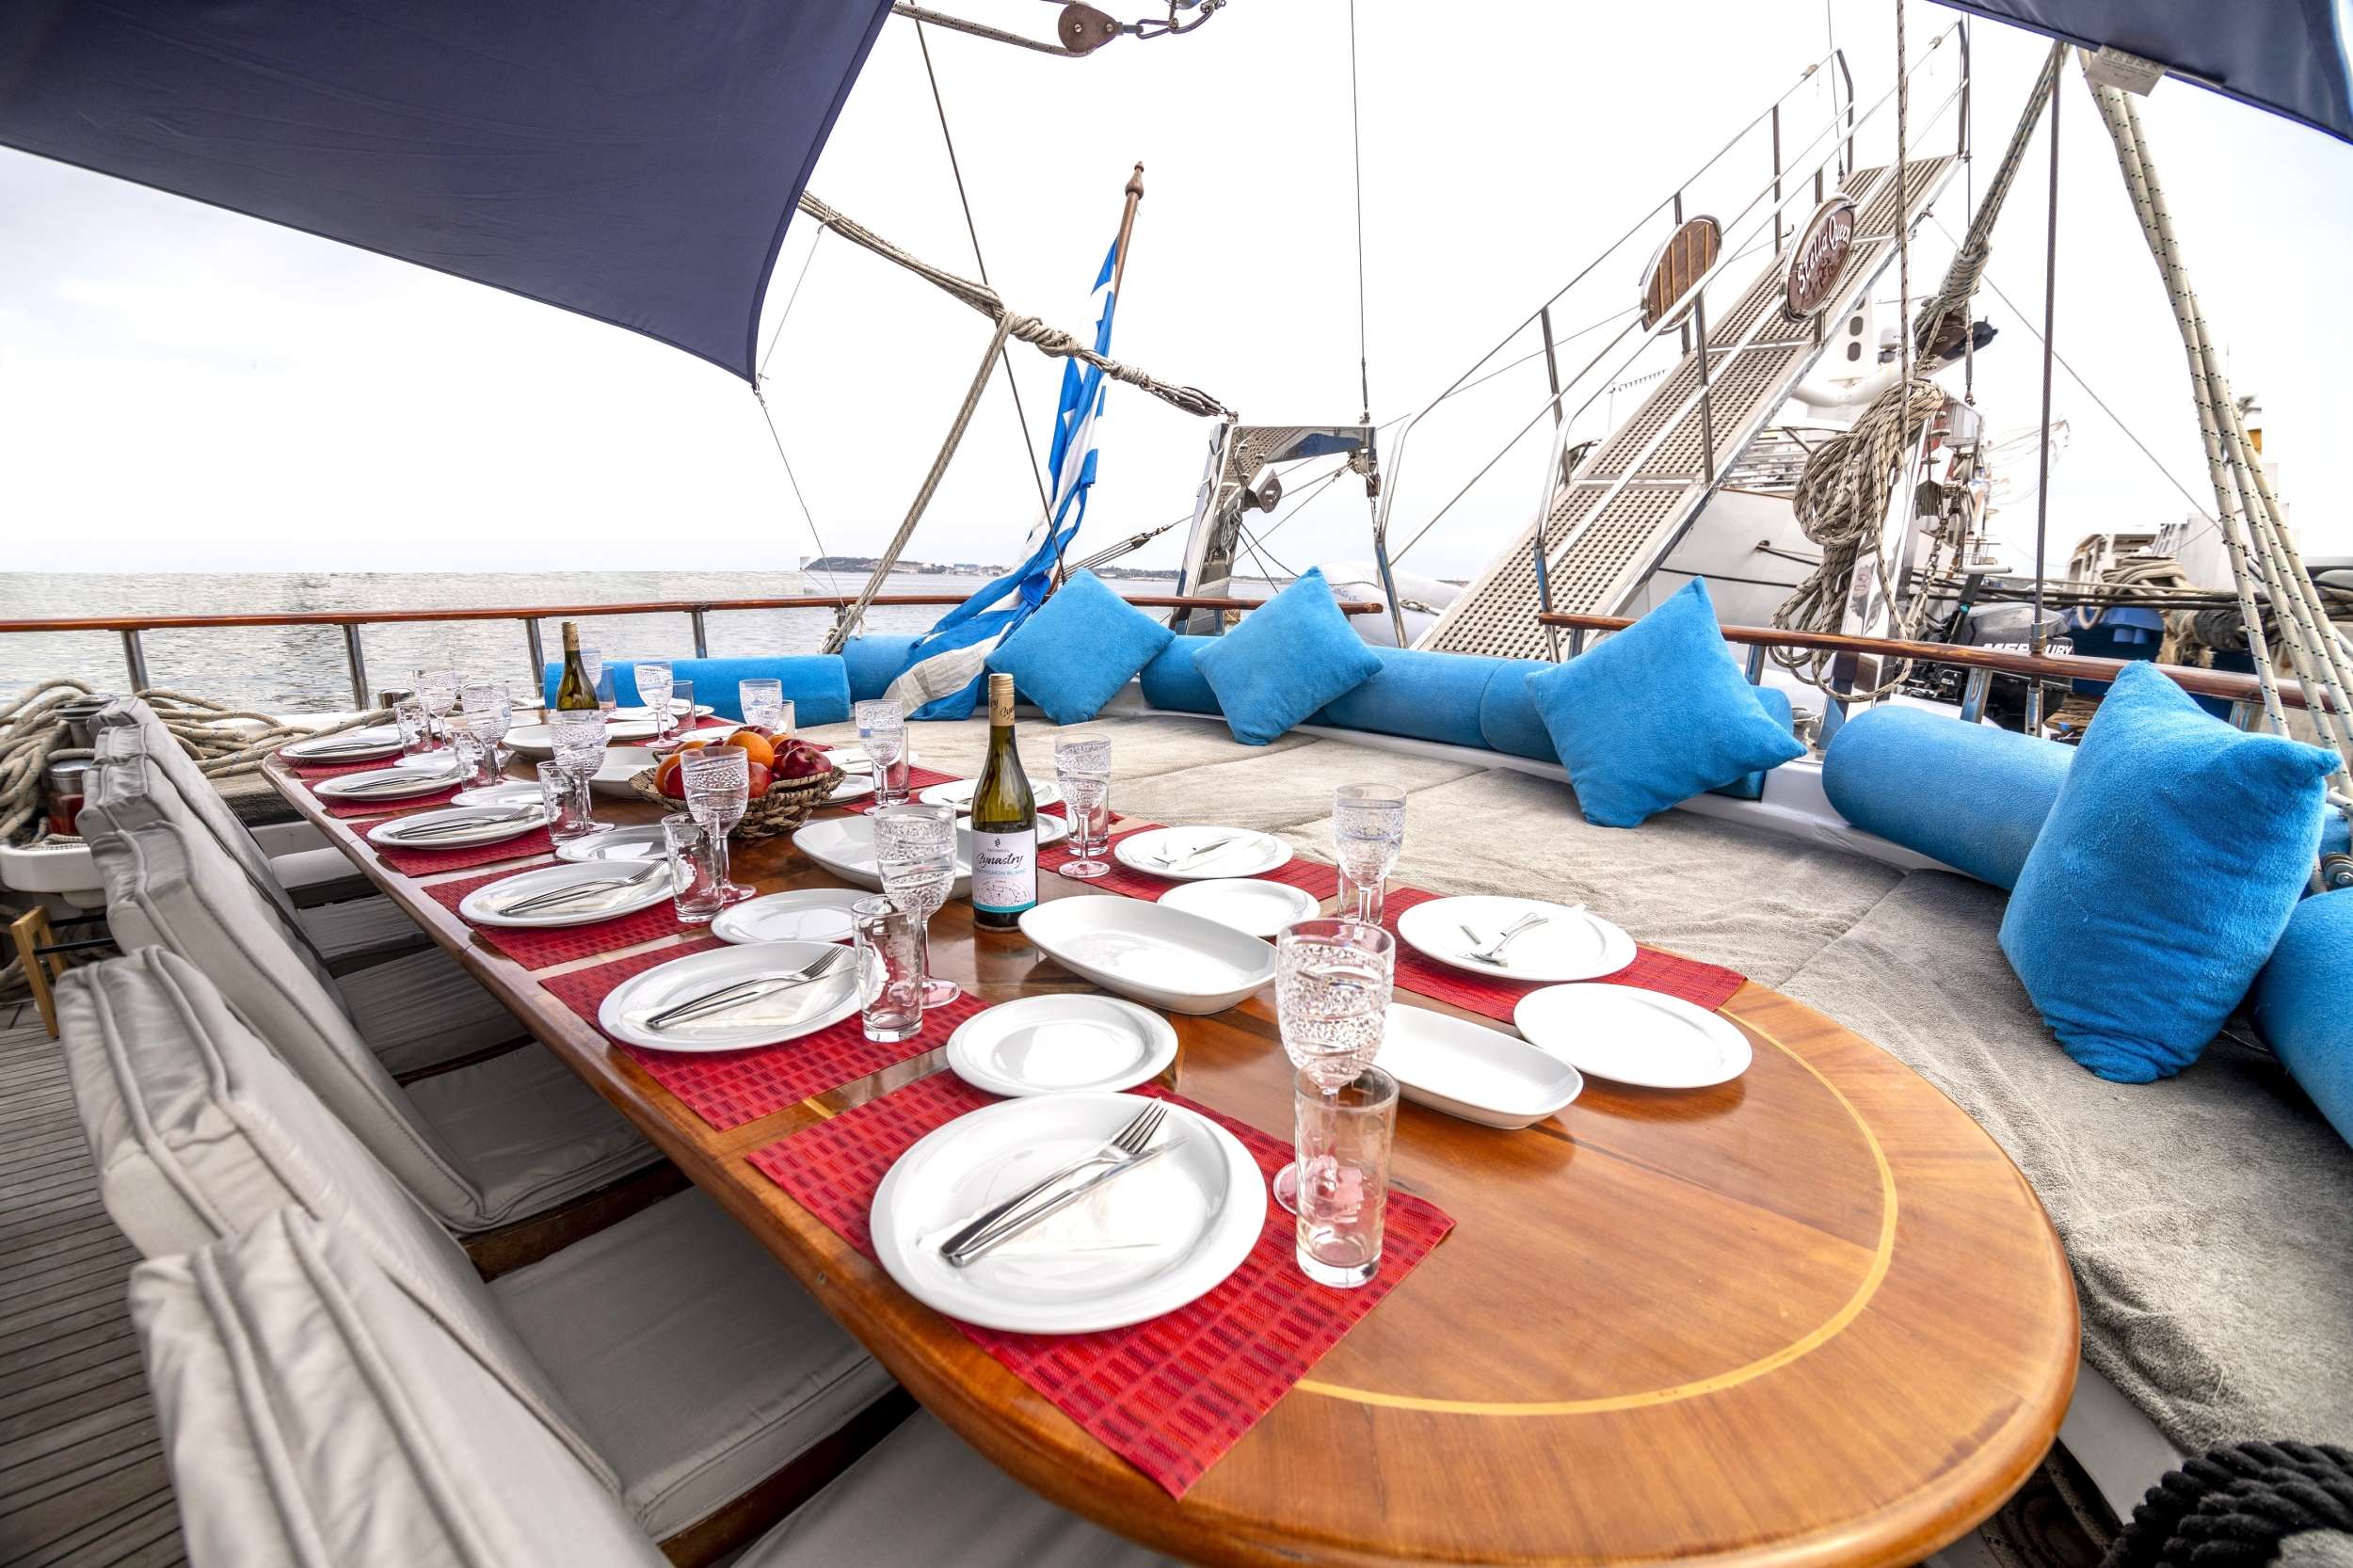 STELLA QUEEN - Yacht Charter Skopelos & Boat hire in Greece 4